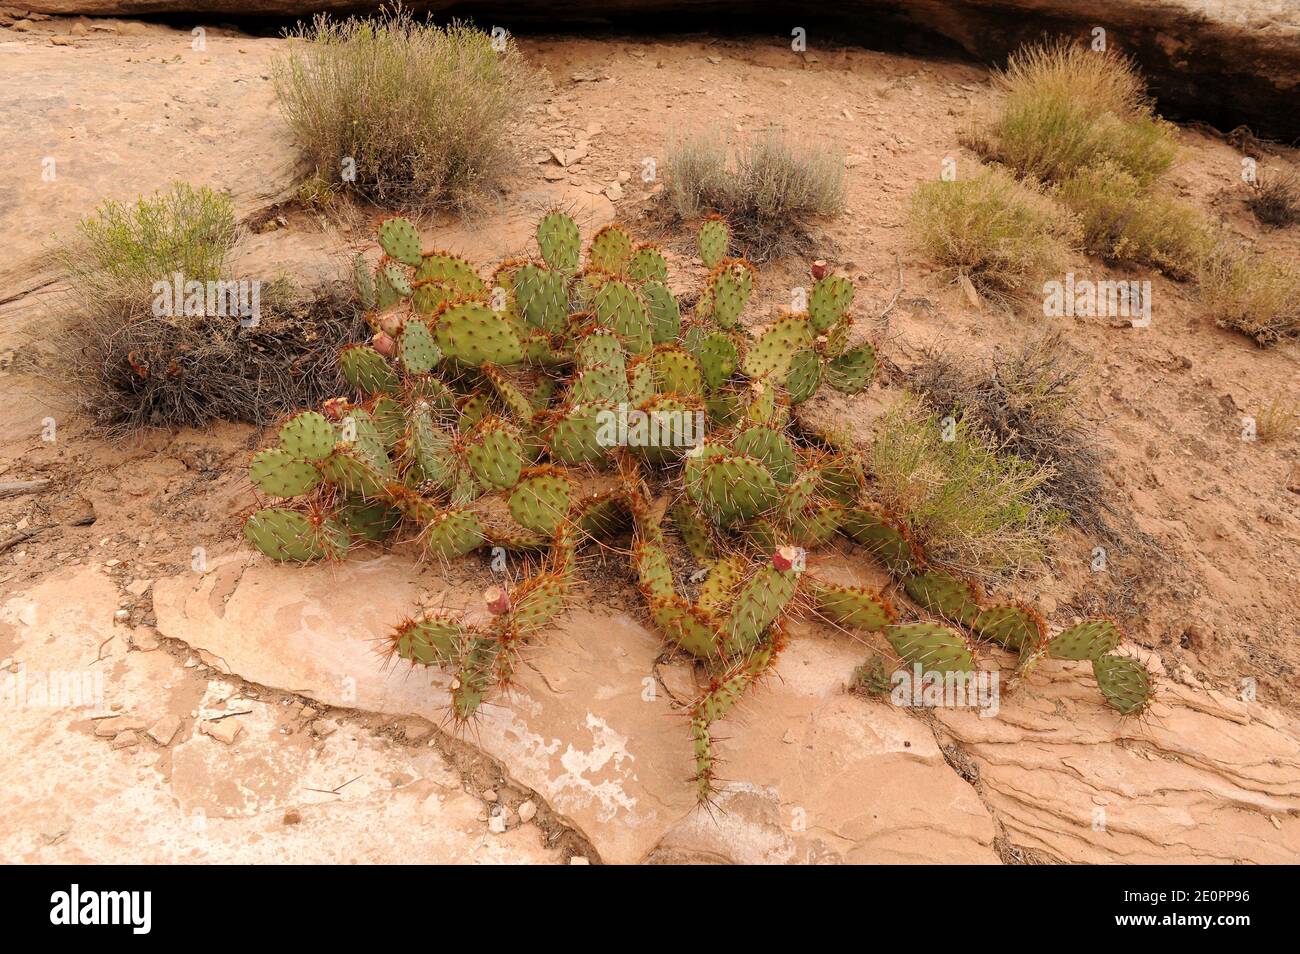 Wüstenstachelbirne oder Tulpenstachelbirne (Opuntia phaeacantha) ist ein Kaktus, der im Südwesten der USA und im Nordwesten Mexikos beheimatet ist. Dieses Foto wurde aufgenommen in Stockfoto